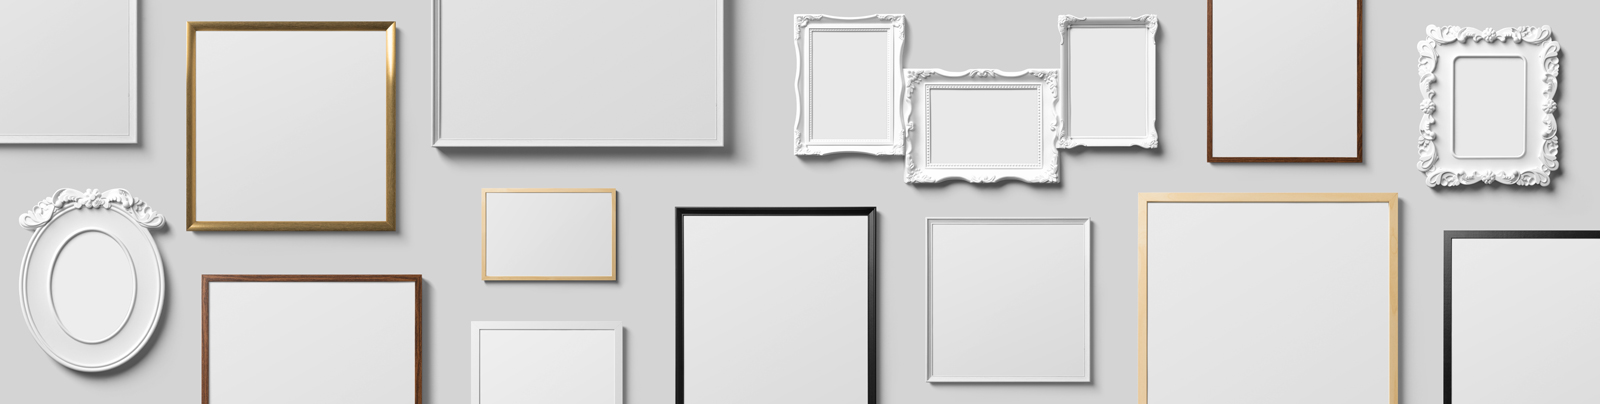 square poster frames